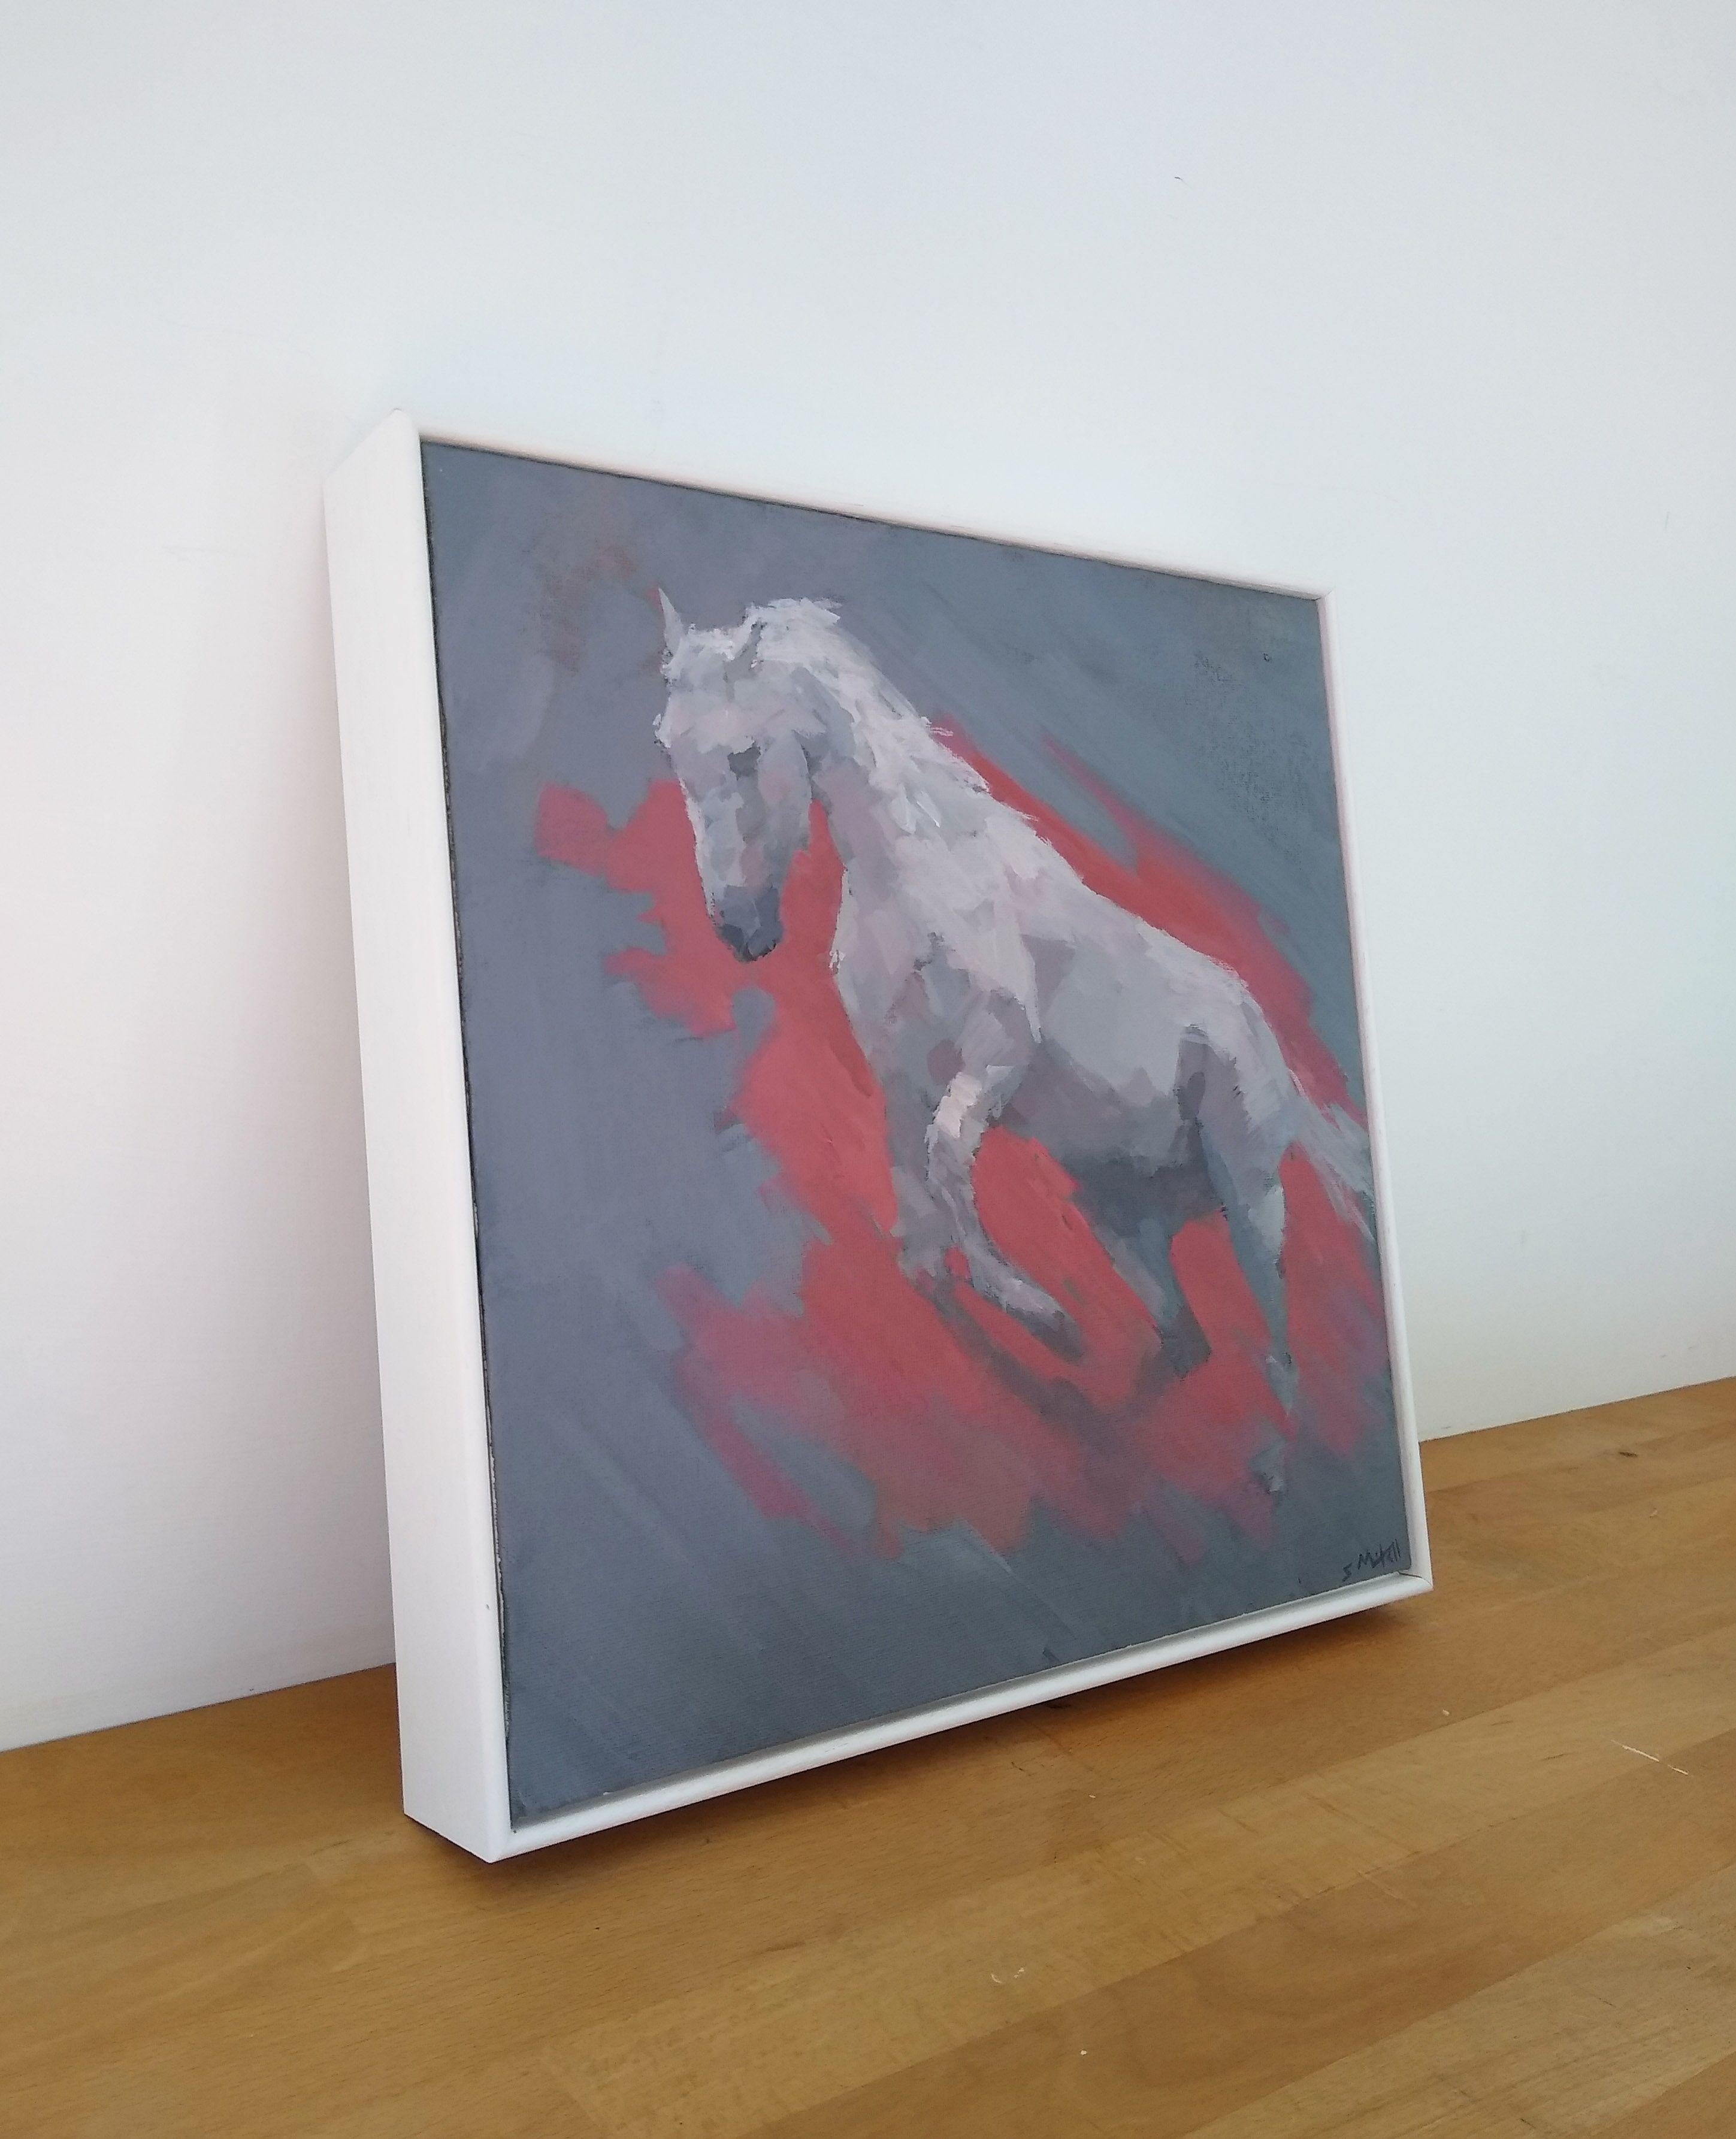 Il s'agit d'une petite peinture originale représentant un cheval blanc au galop. Le style expressif et le fond rouge ajoutent à l'effet dramatique.    Elle est peinte sur un panneau de toile de 3mm, et est encadrée dans un cadre en bois blanc à